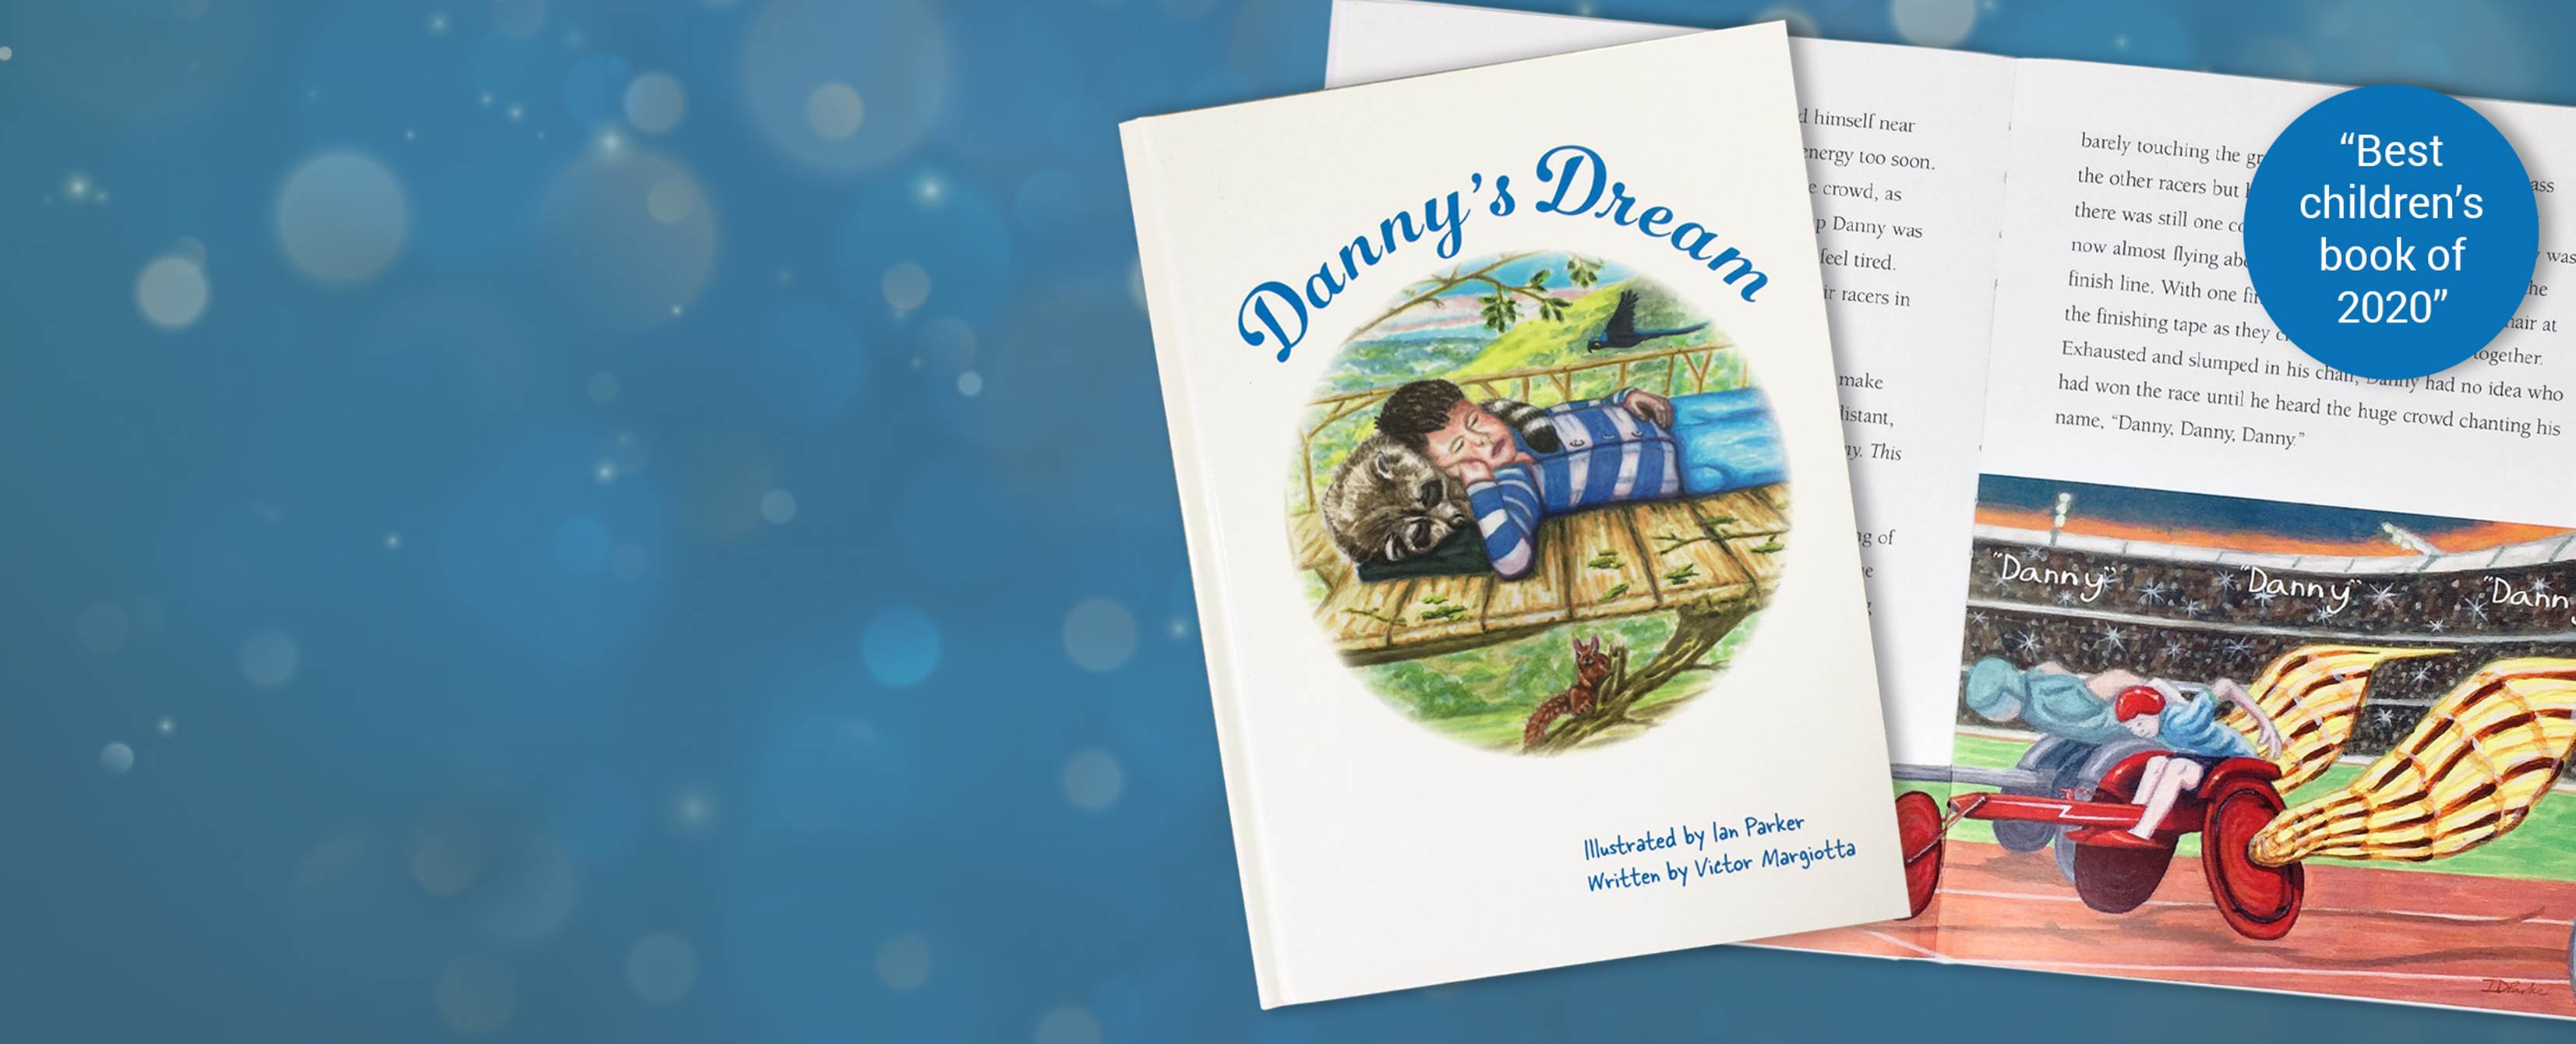 Dannysdream Slider 2021 Best Childrens Book 2020